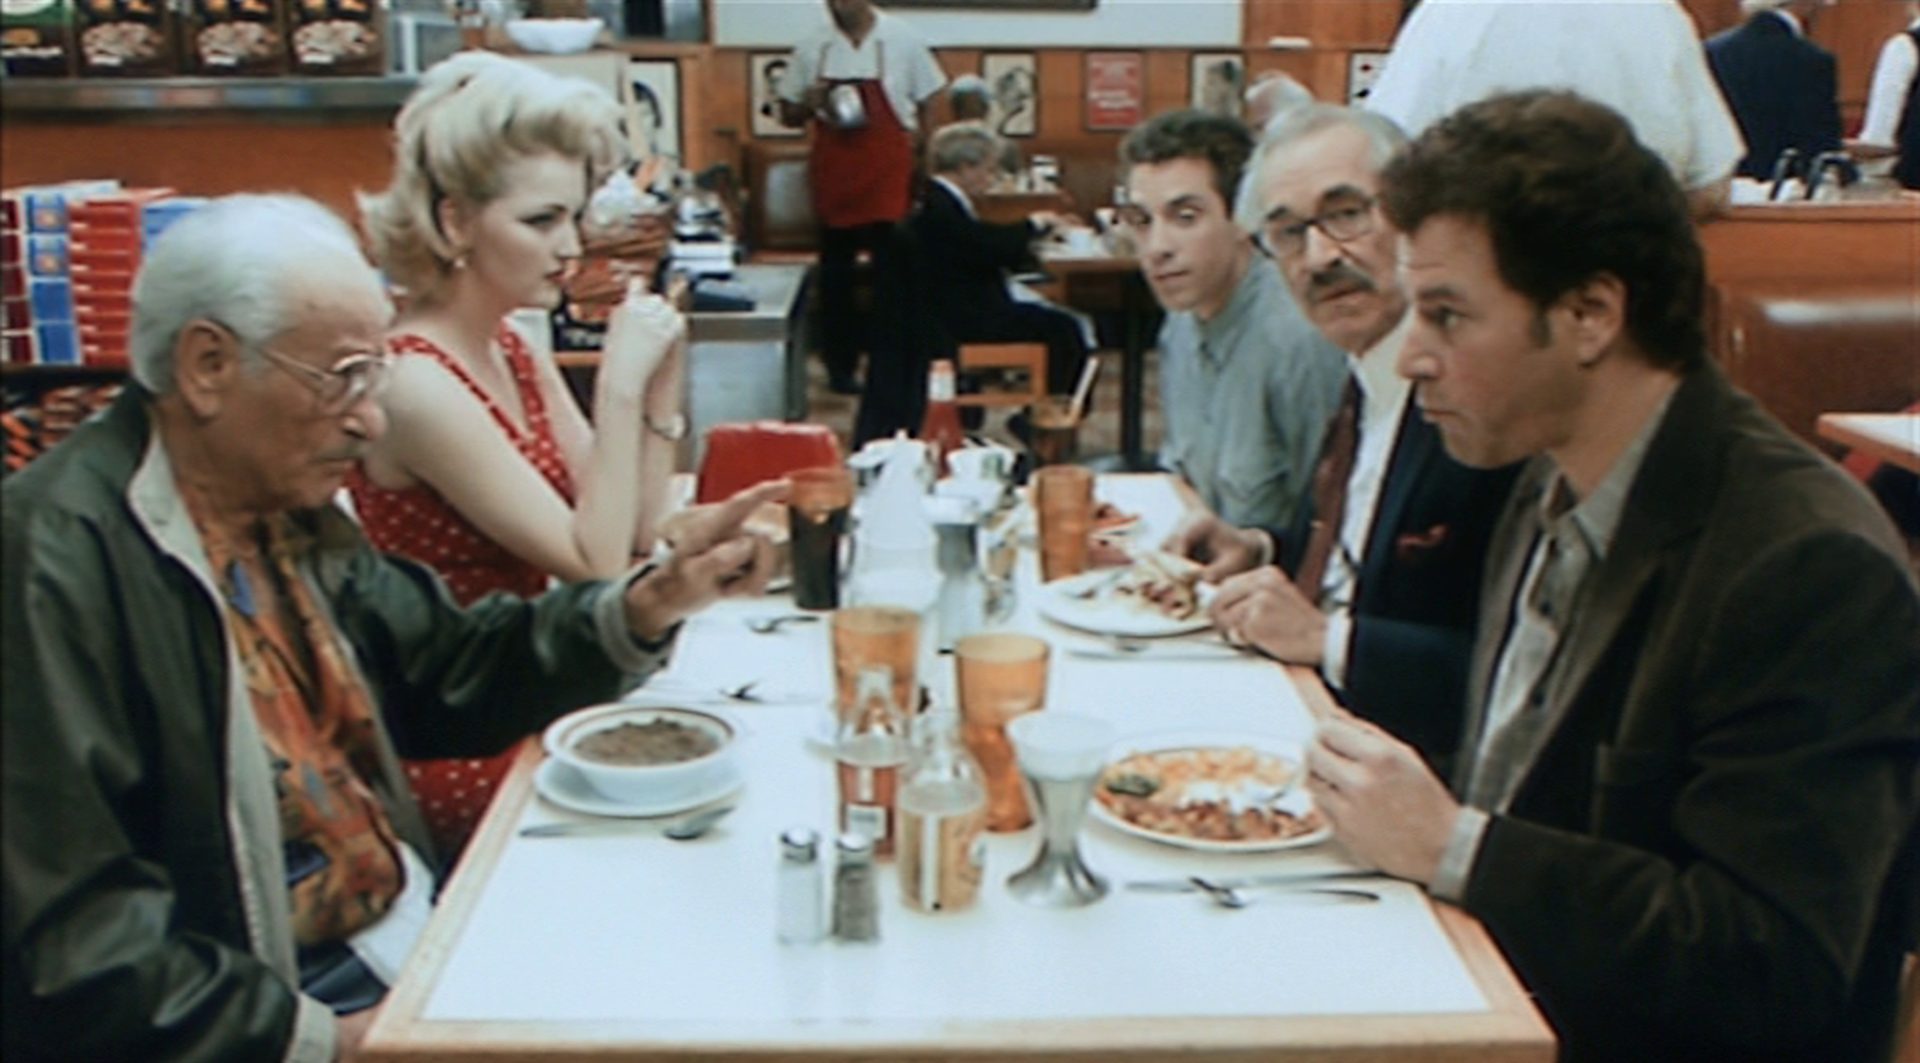 Die drei Filmemacher im Gespräch mit einem potenziellen Investor und dessen Freundin in einem Restaurant.